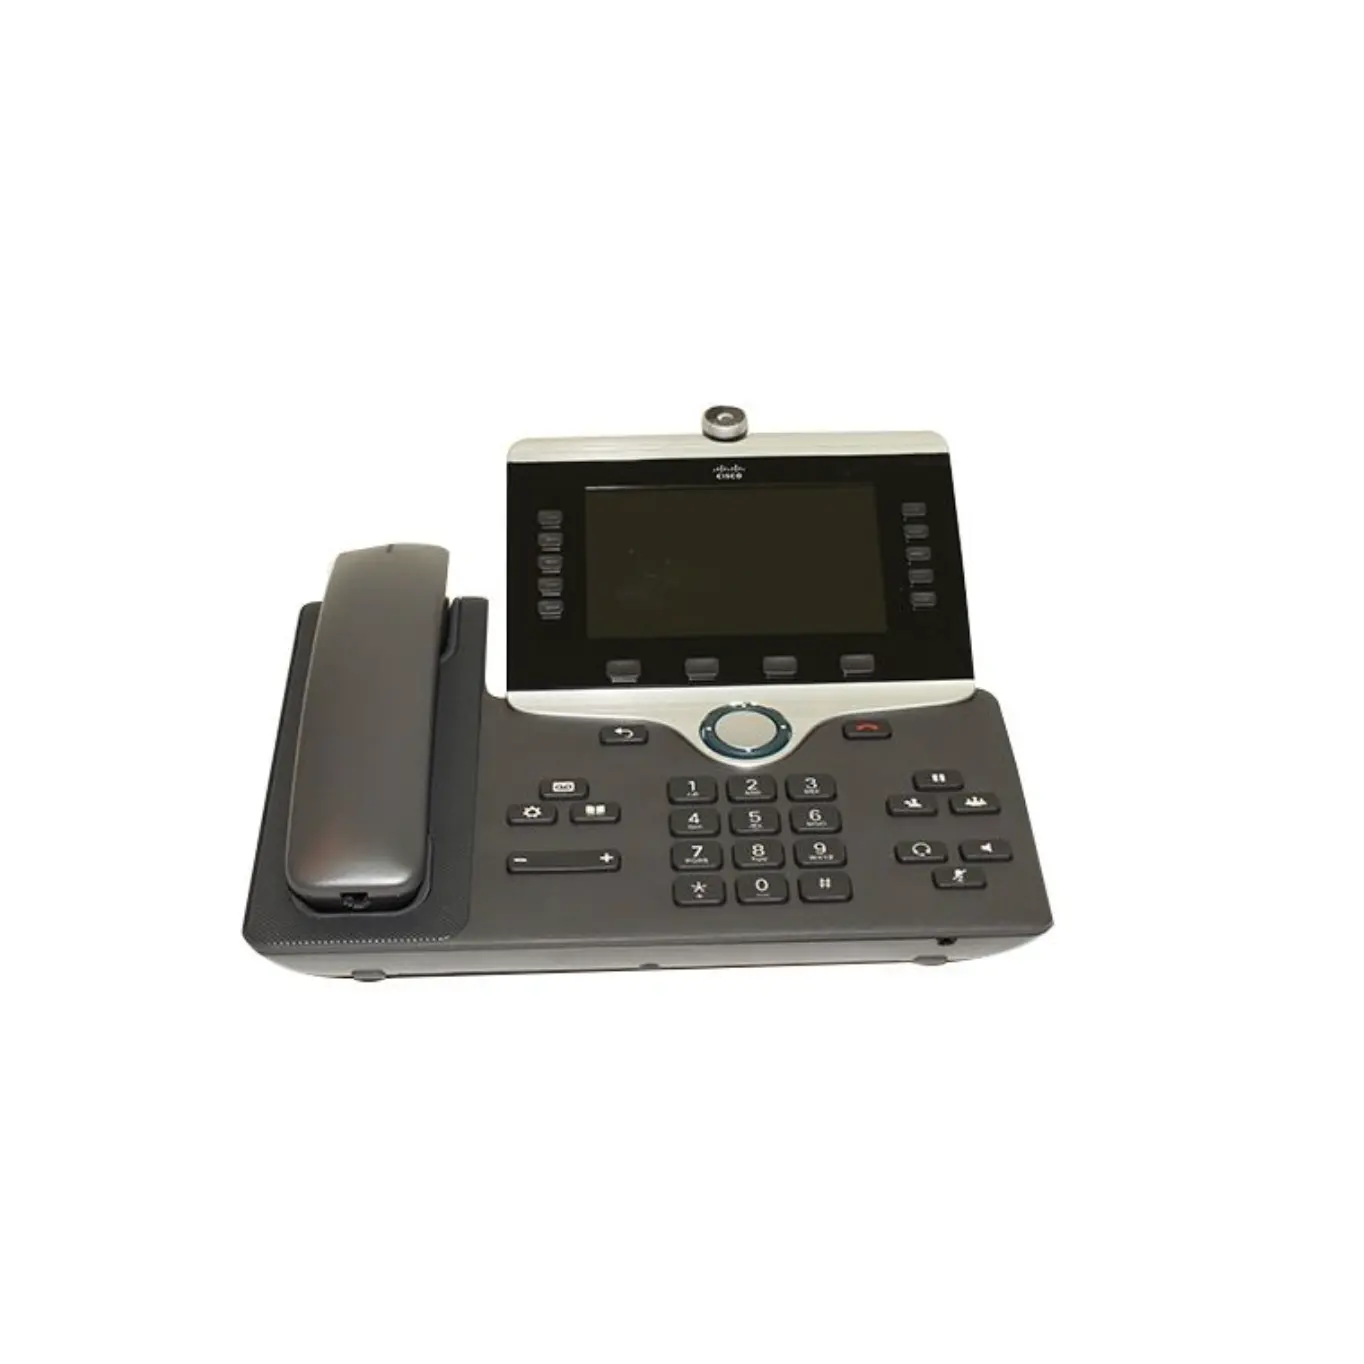 CP-8845-K9 Telefone IP Cisco 8800 CP-8845-K9 Telefone Voip Telefone IP Cisco CP-8845-K9